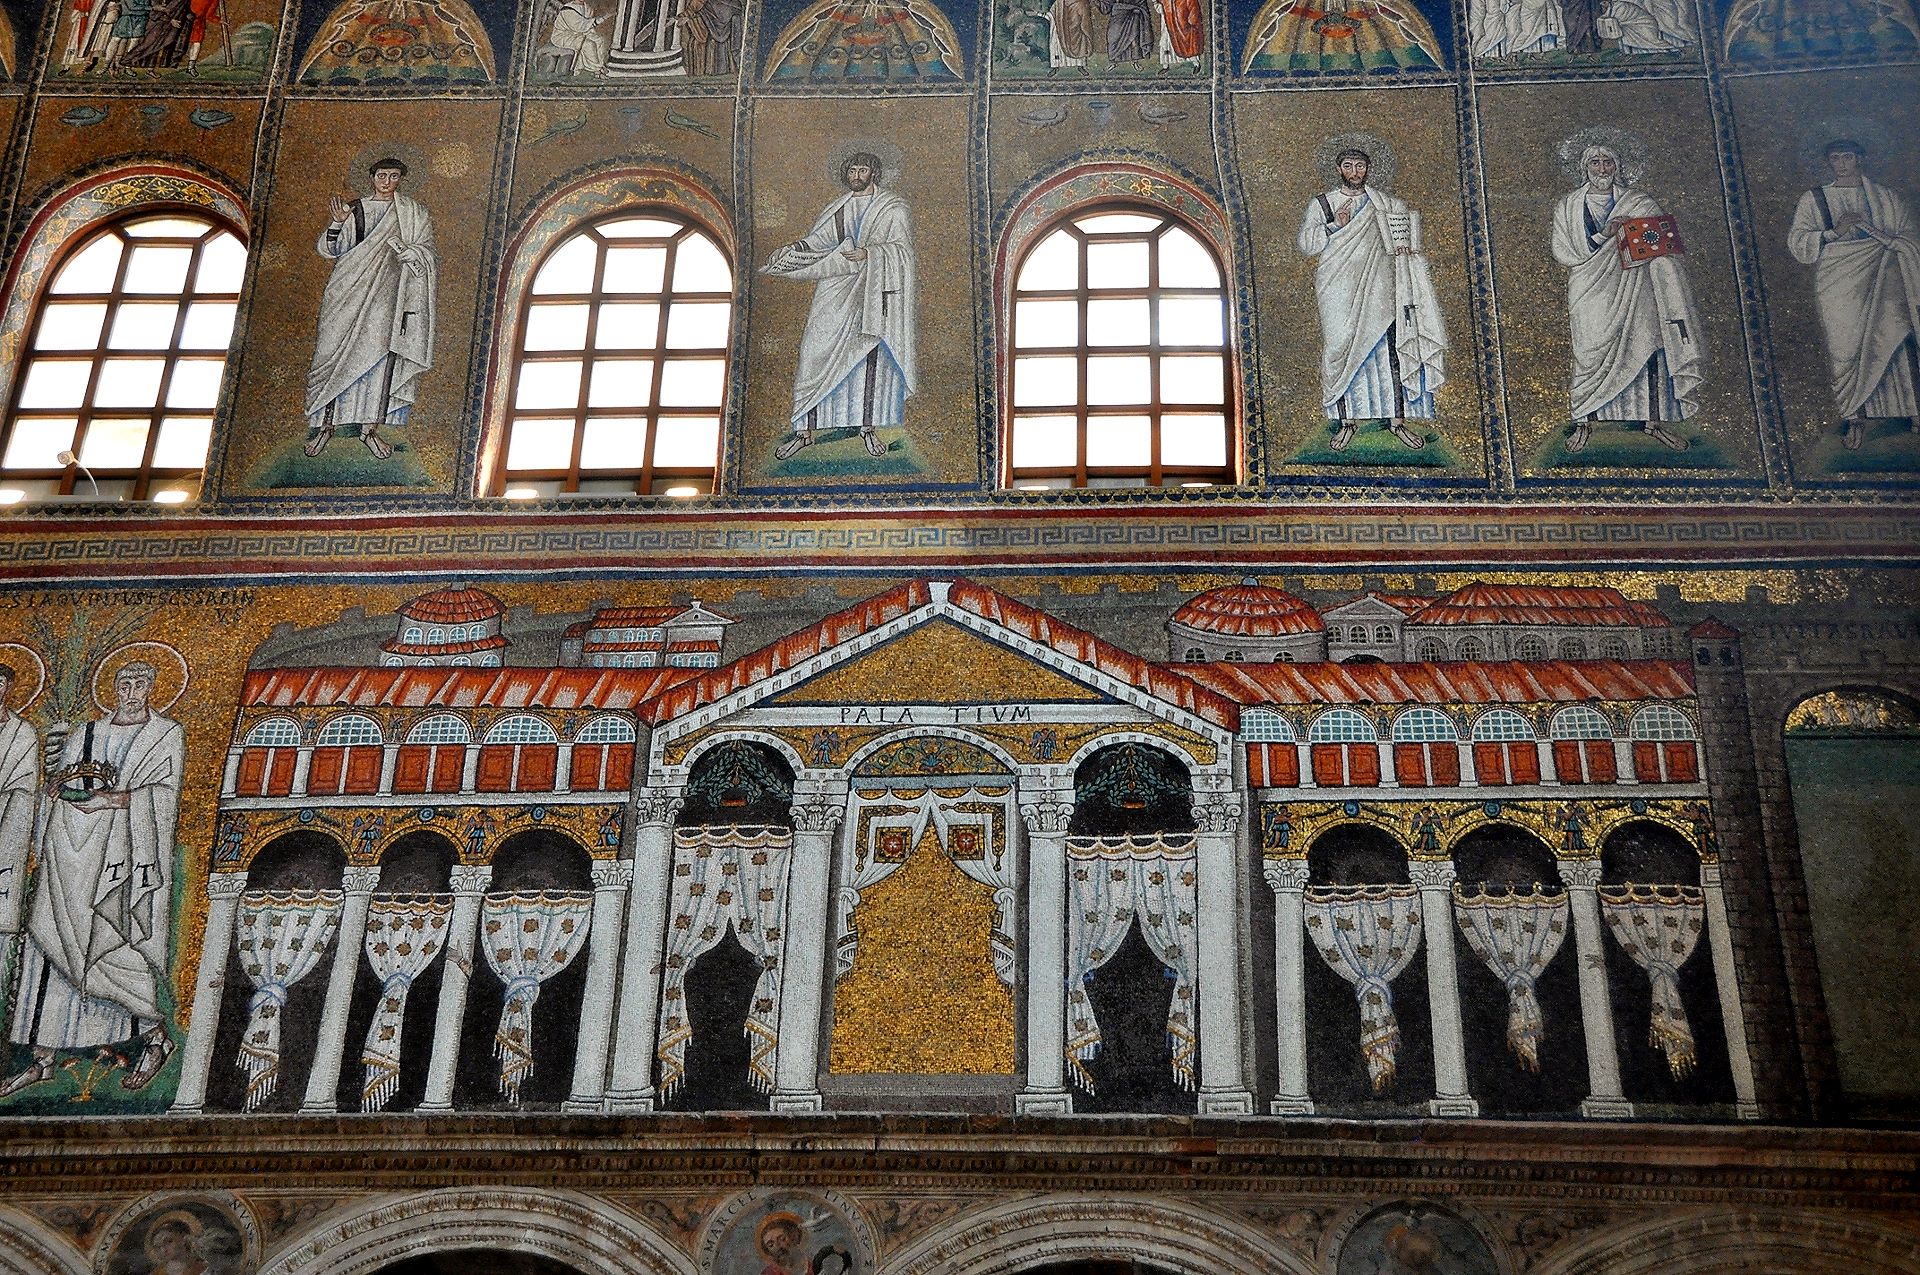 Basilica di Sant’Apollinare Nuovo - Mosaik mit dem Palast Theoderichs, die Figuren wurden durch weiße Gardinen ersetzt